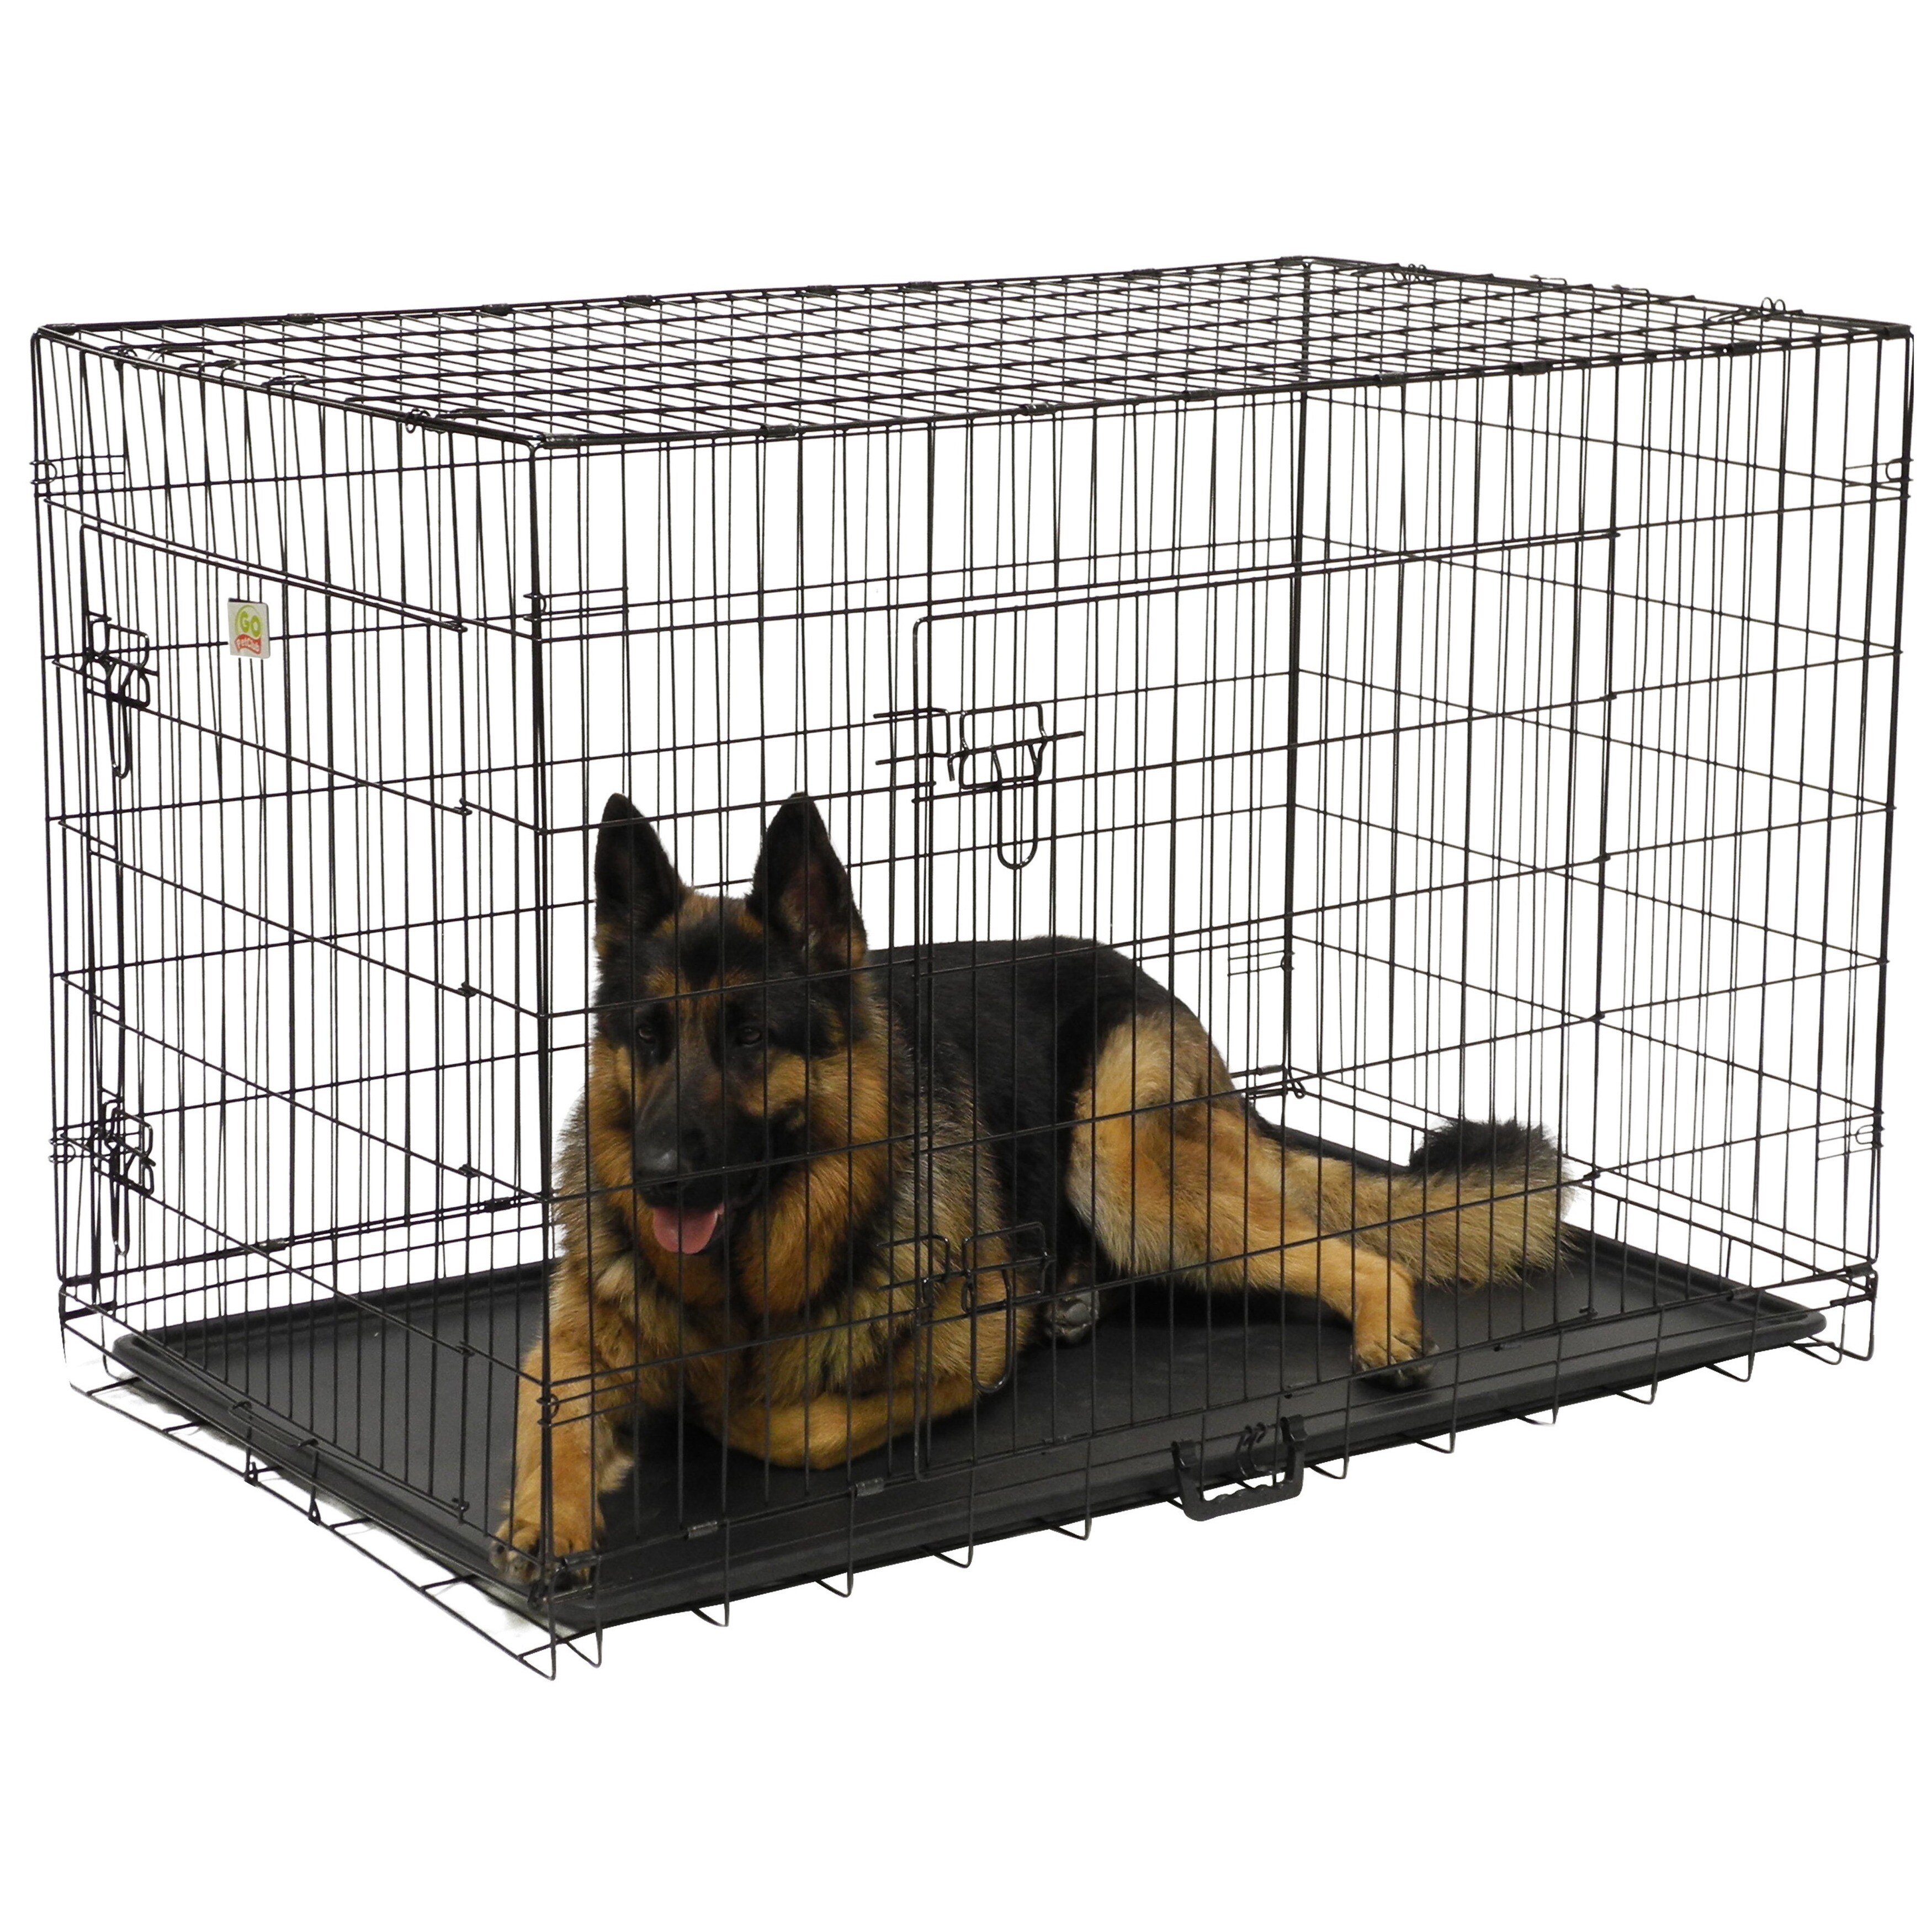 48 plastic dog crate